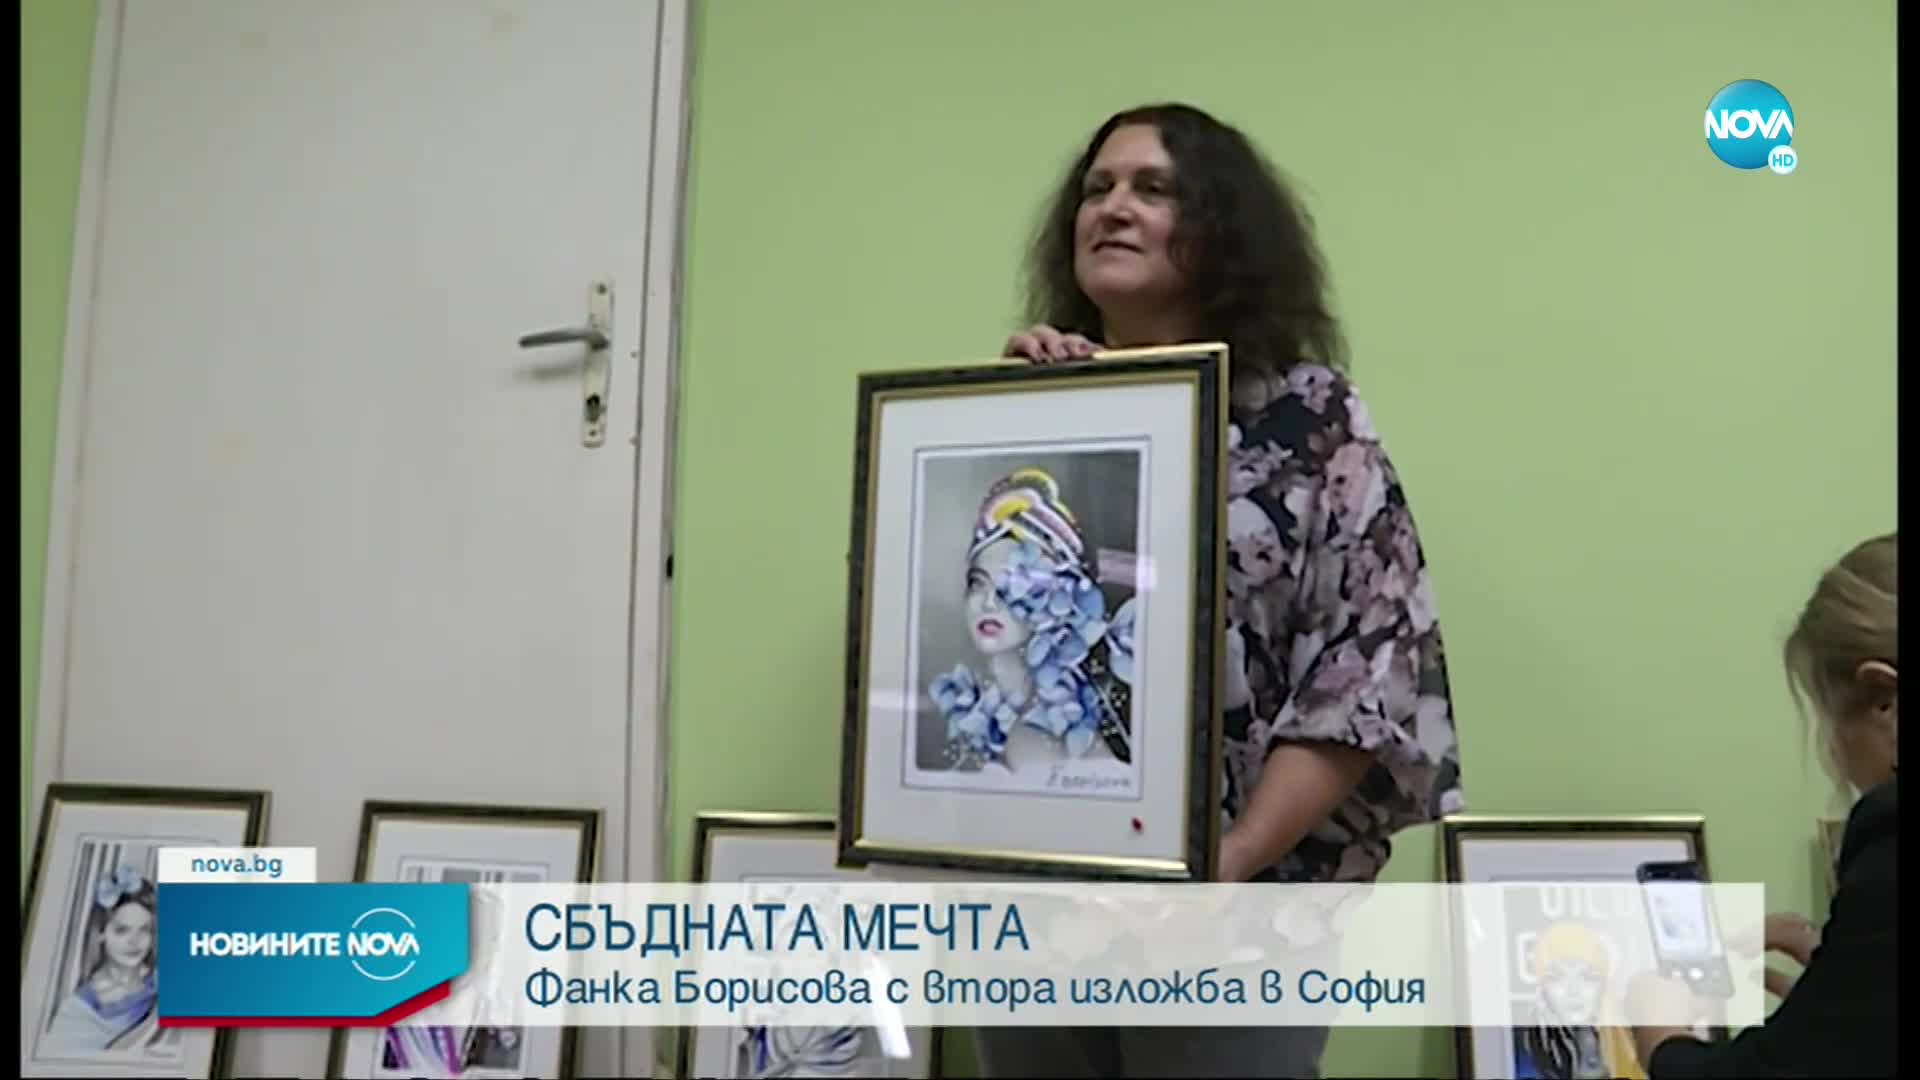 ЕДНА СБЪДНАТА МЕЧТА: Фанка Борисова откри втората си изложба в София